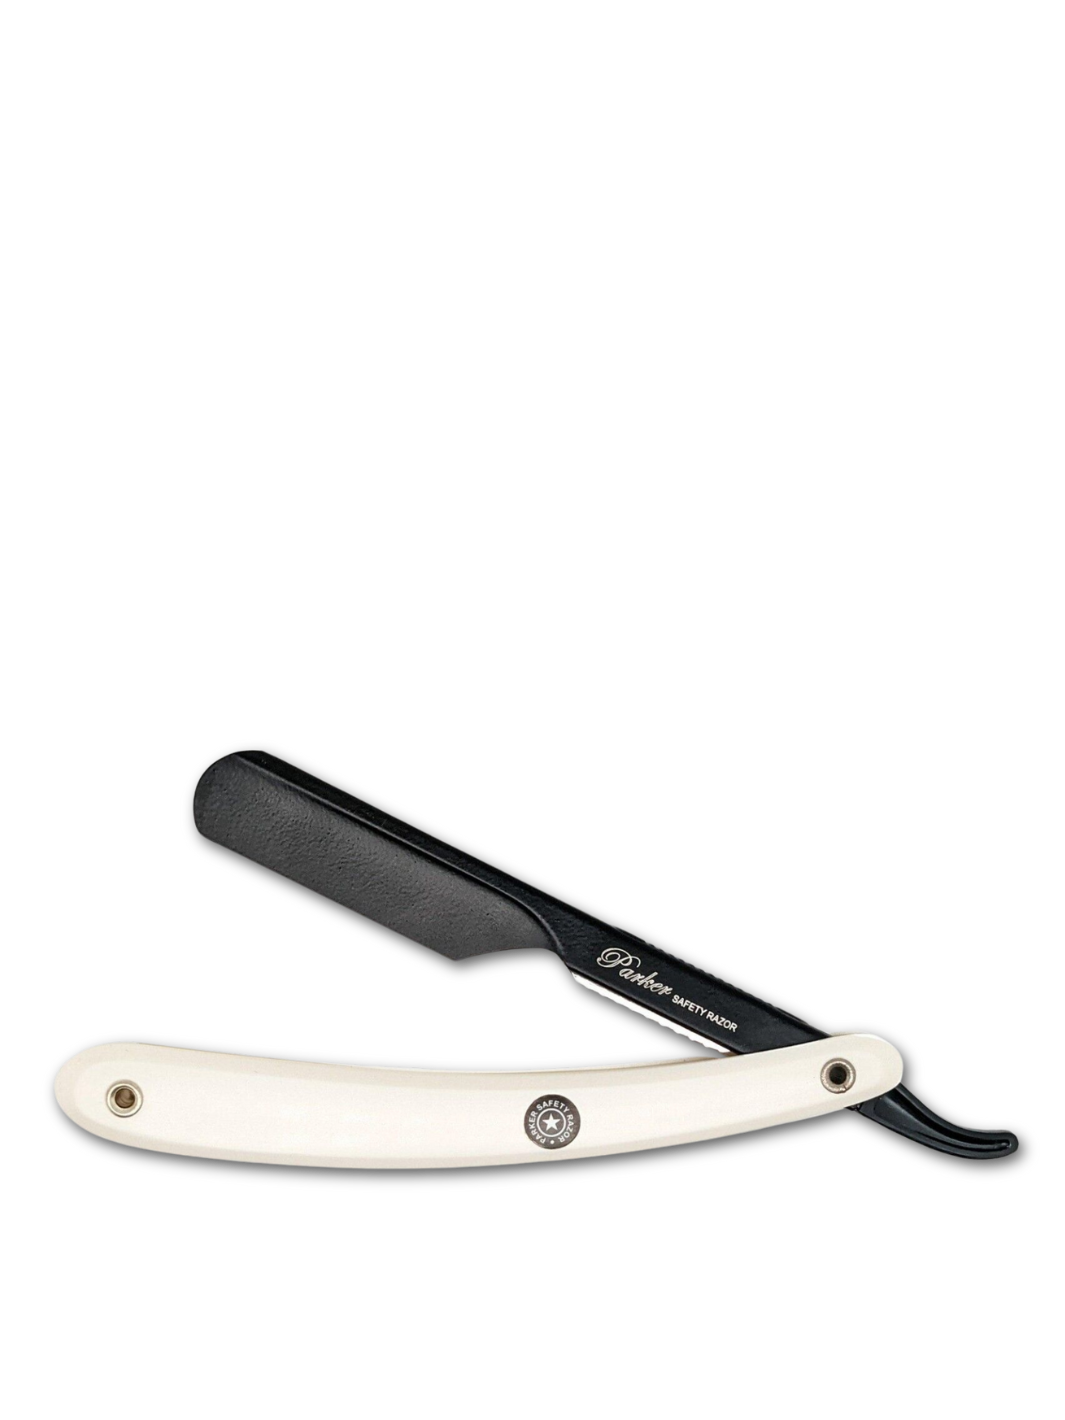 Elegantes Parker PTAWH einstellbares Rasiermesser mit weißem Griff und schwarzem Klingenarm, erhältlich bei Phullcutz für eine präzise und stilvolle Rasur.